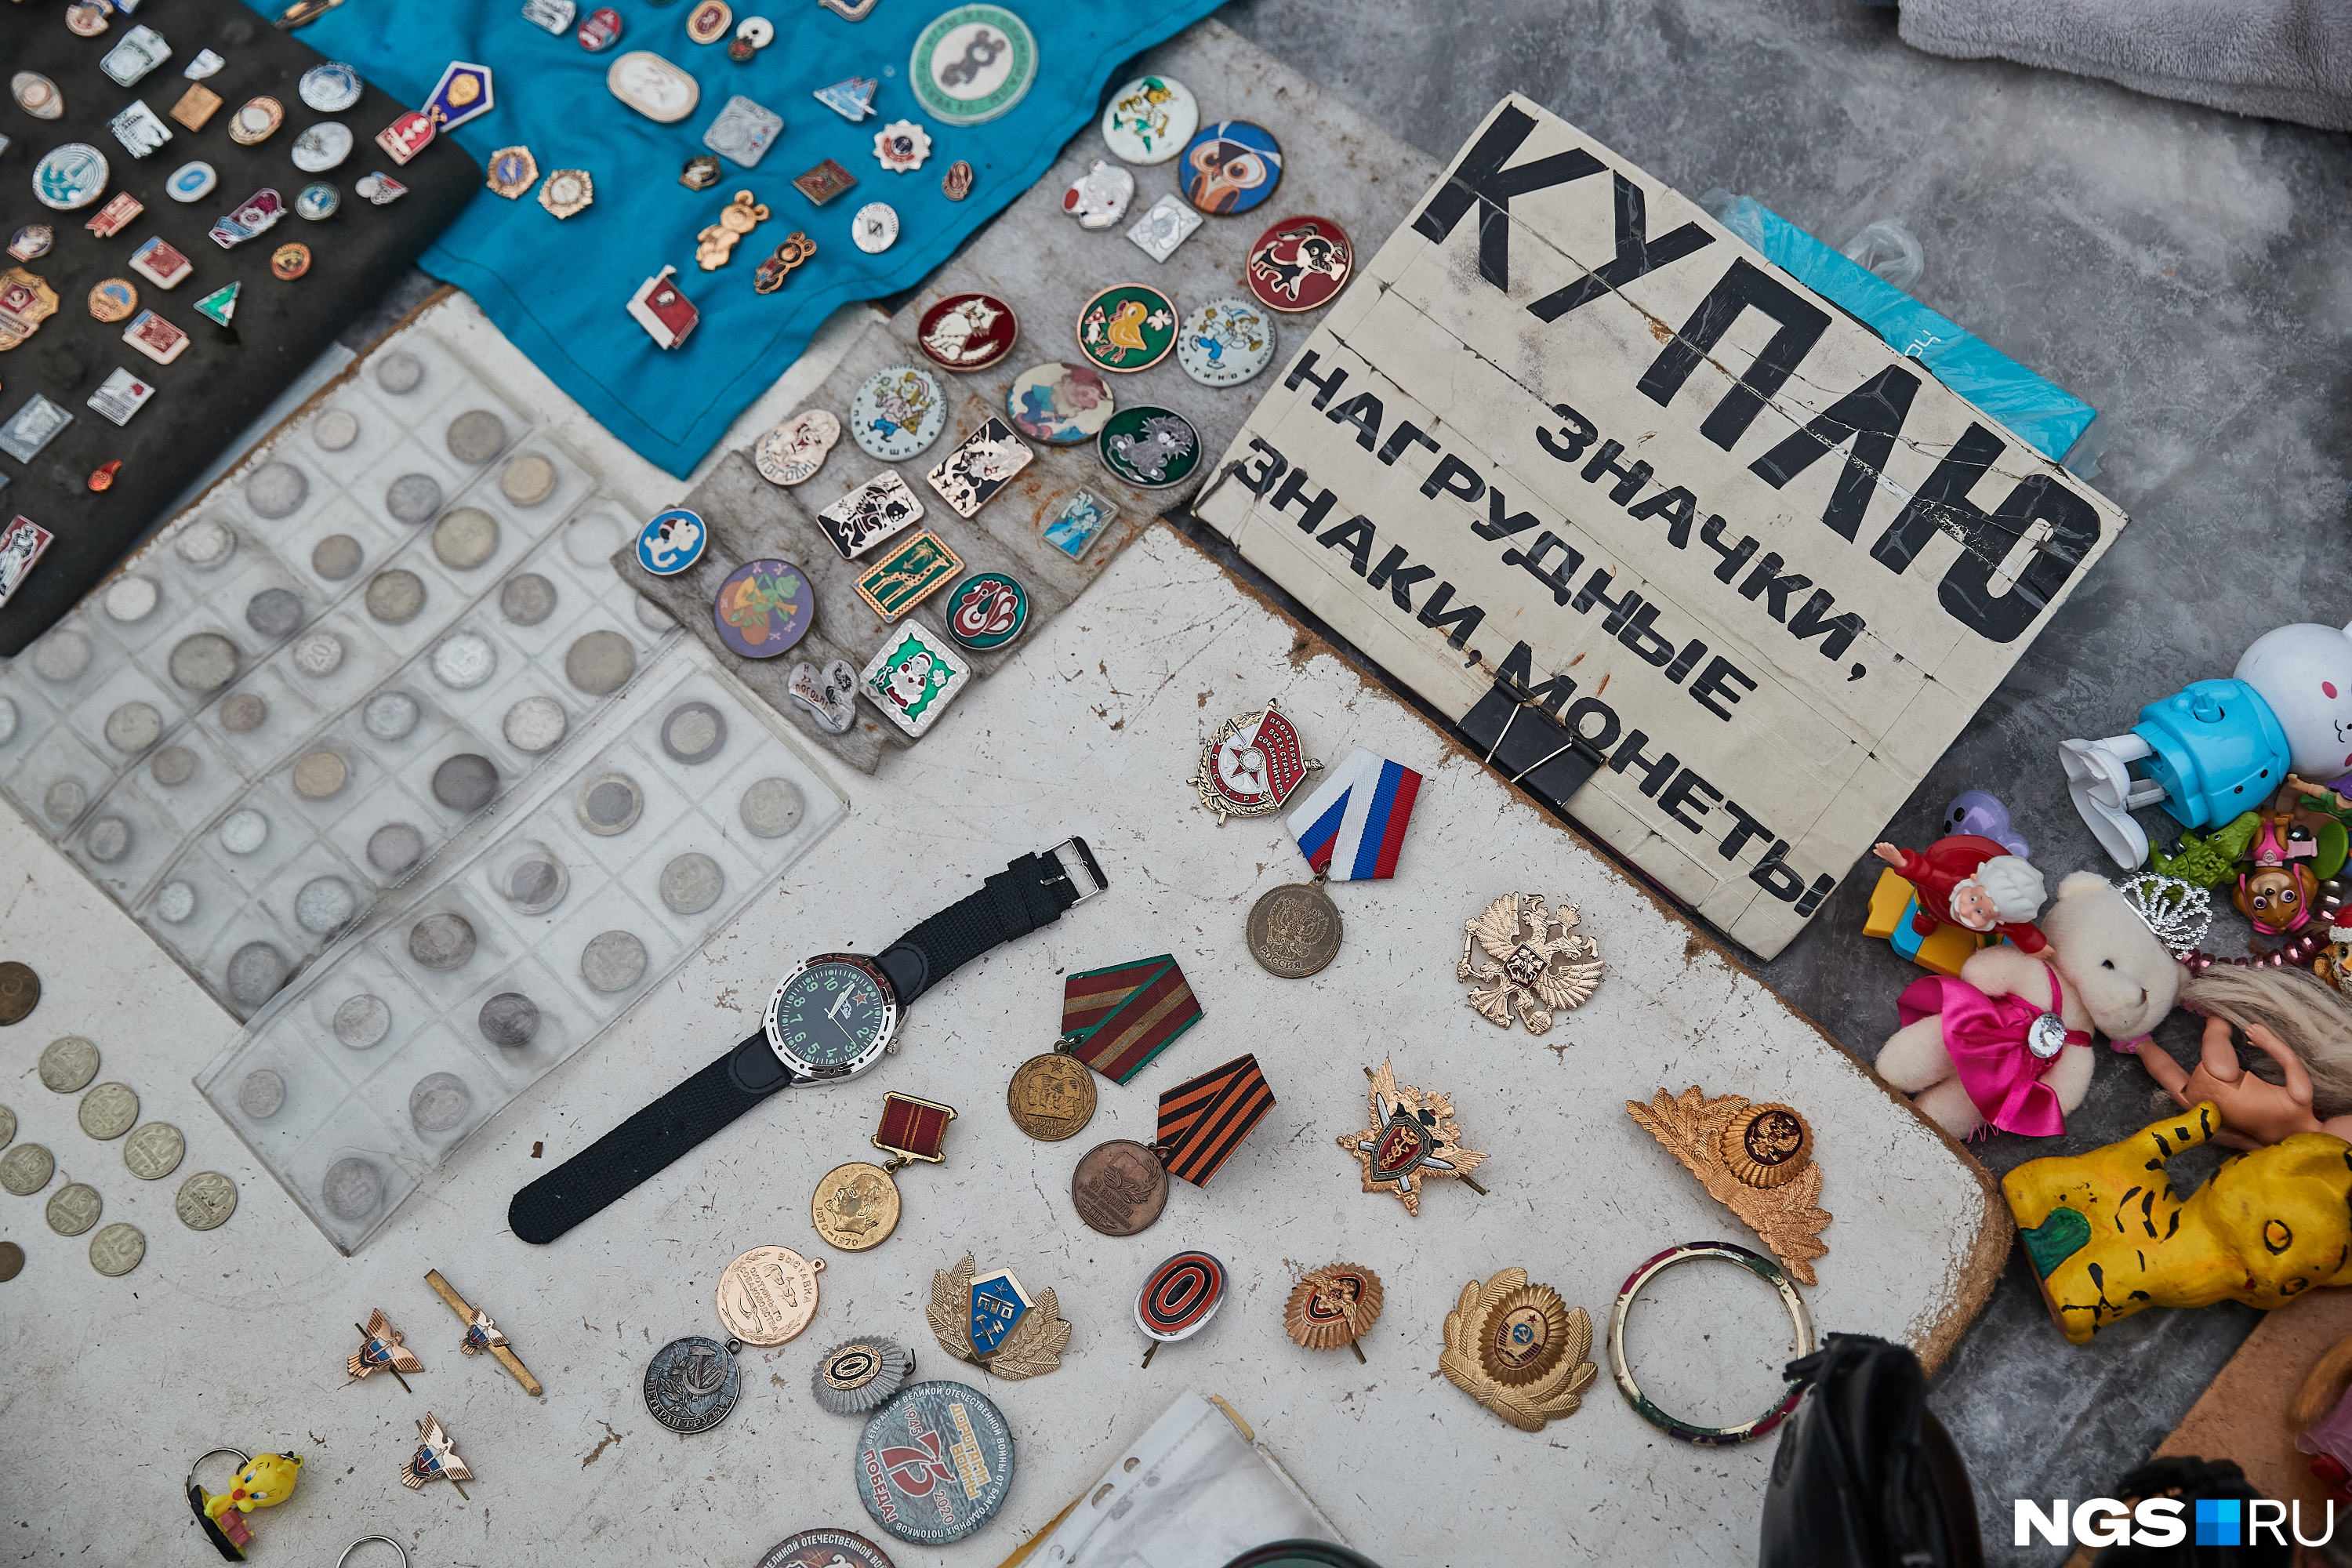 Здесь можно купить и продать часы, монеты и значки советской эпохи